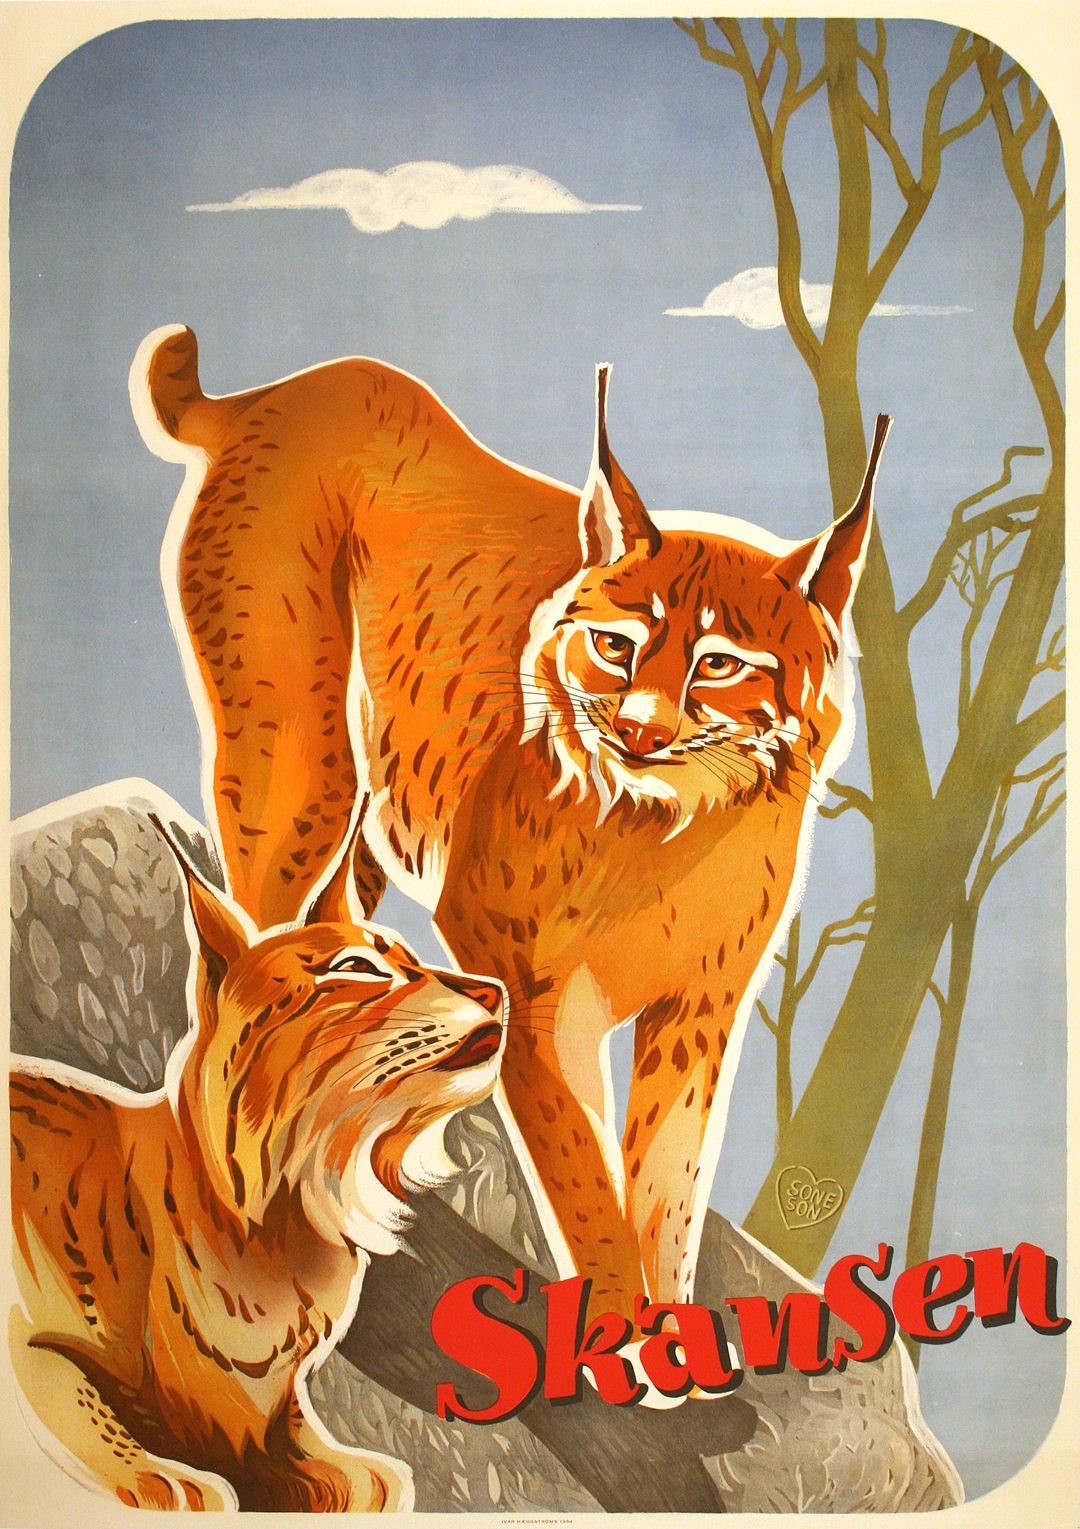 Swedish Skansen Lynx Couple Poster 1954 by Ivar Haeggstroms